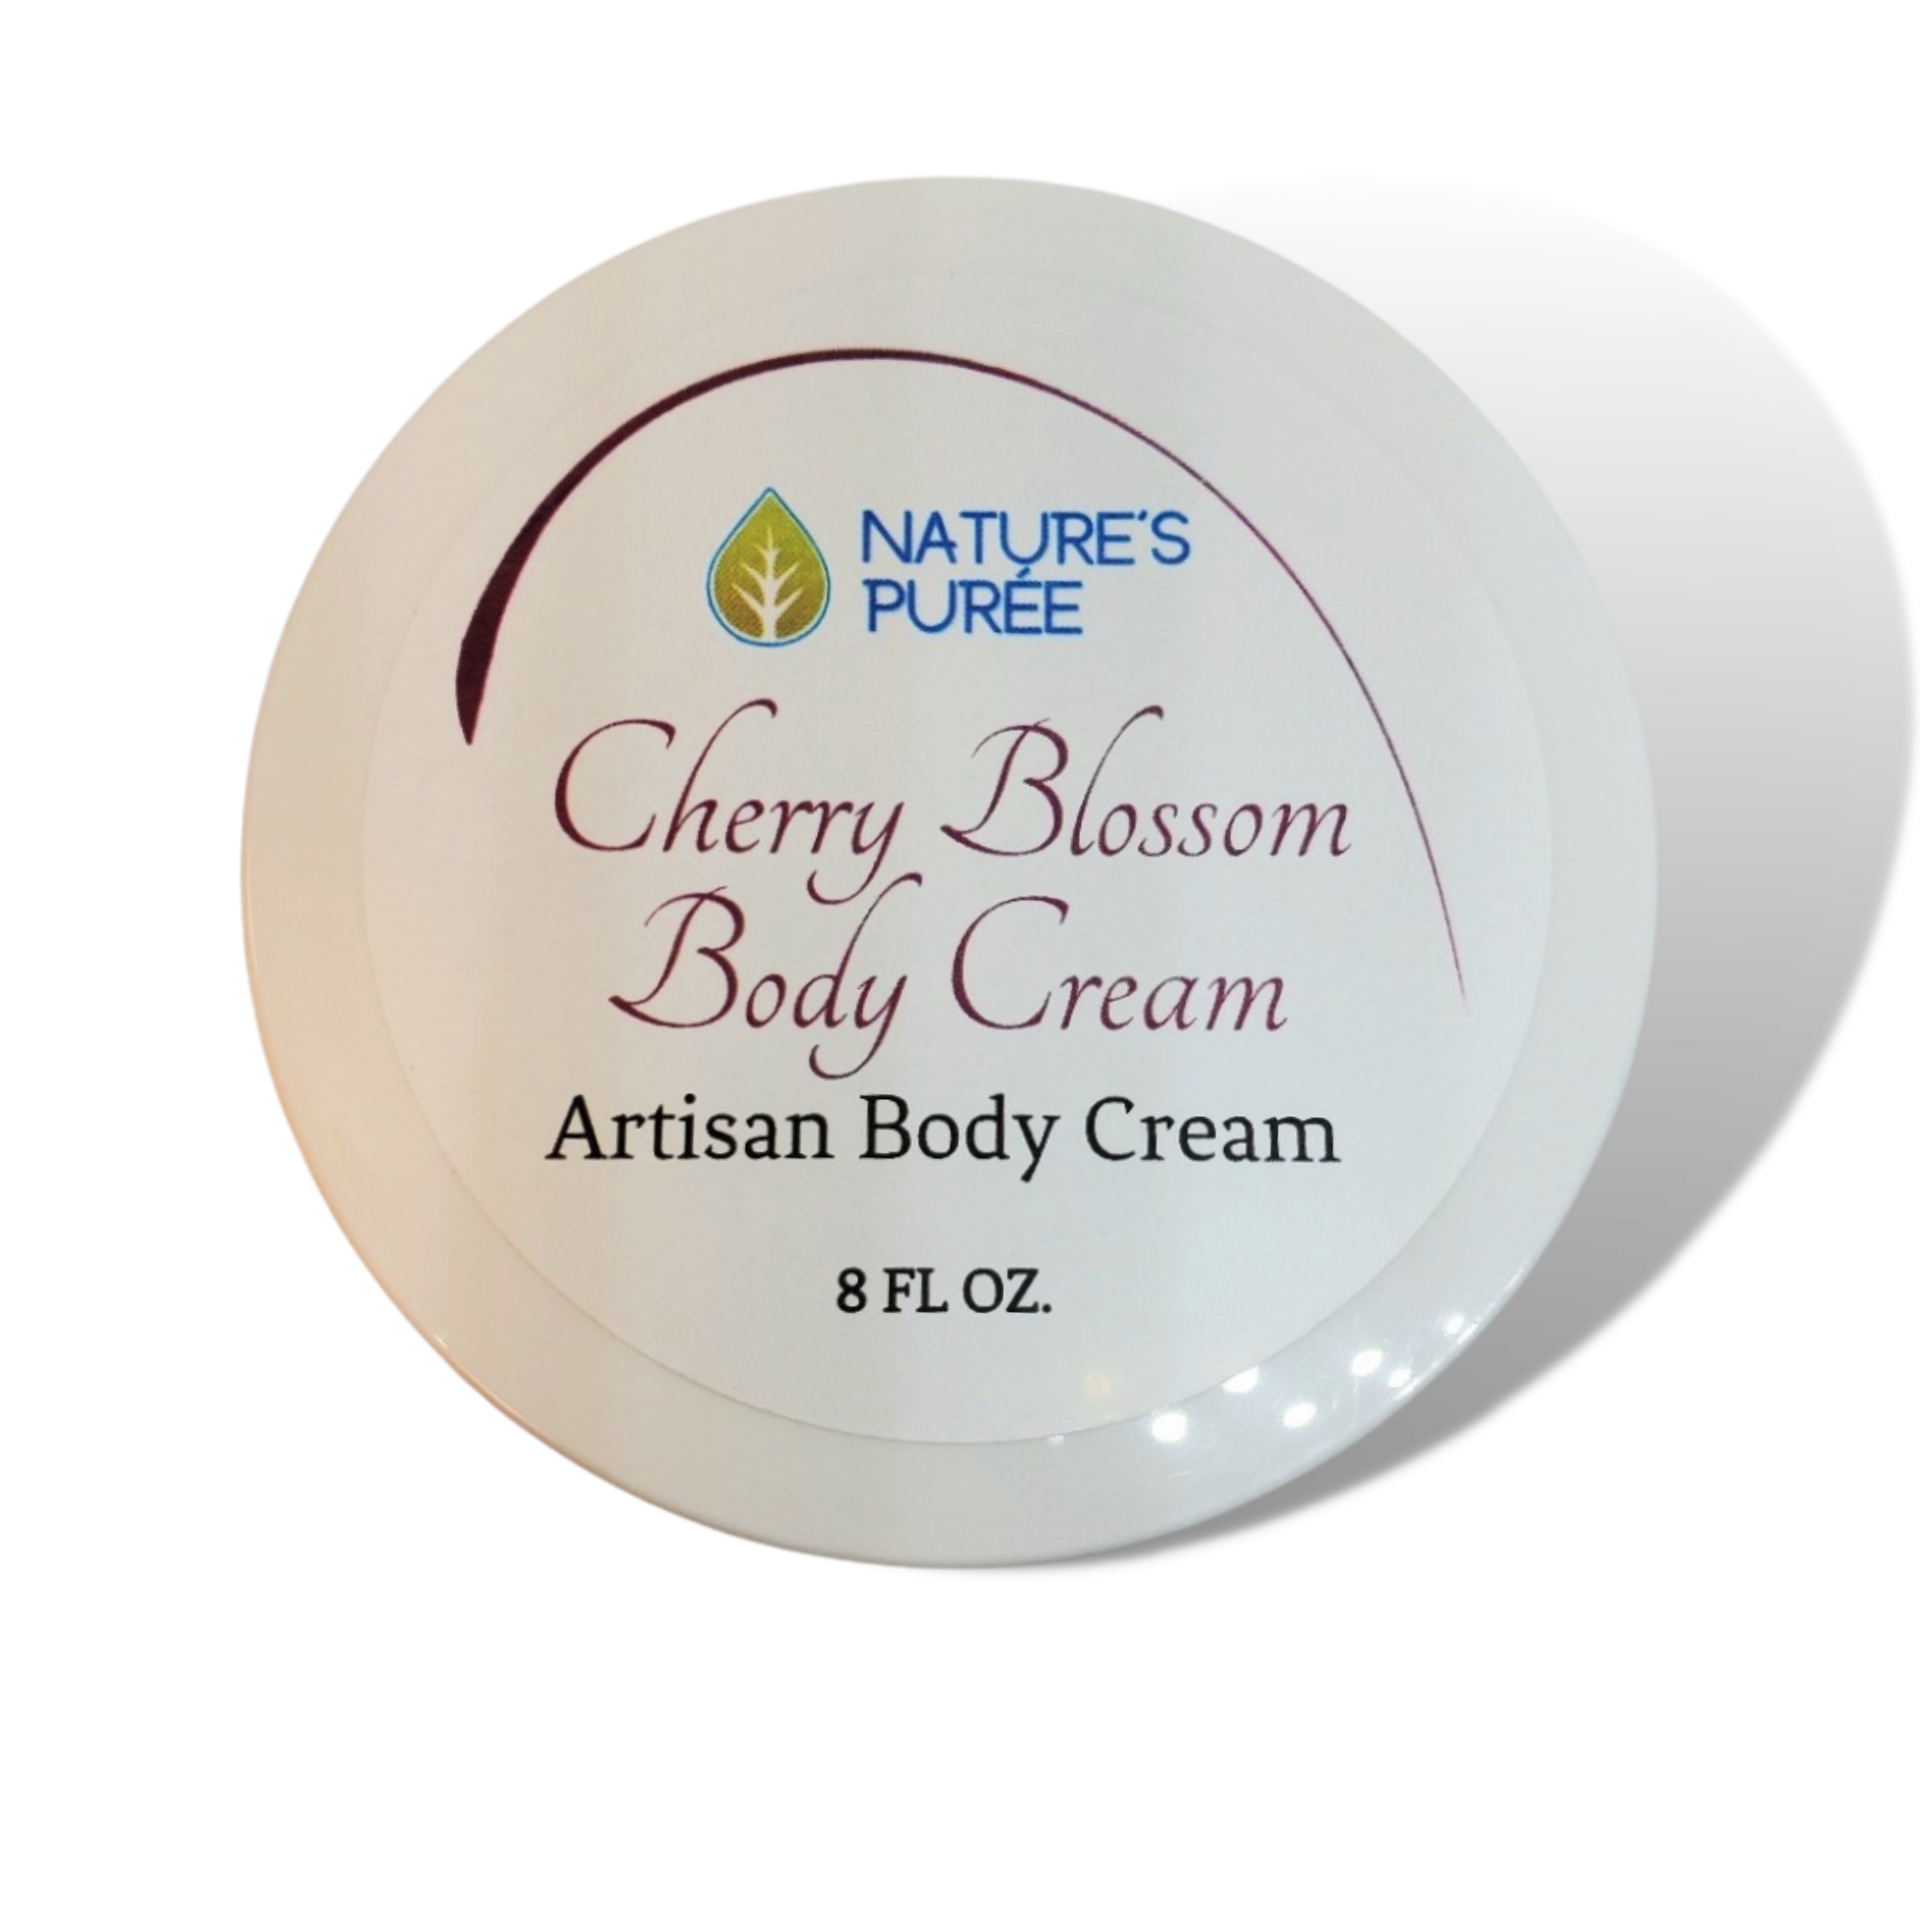 NATURE'S PURÉE Cherry Blossom Body Cream